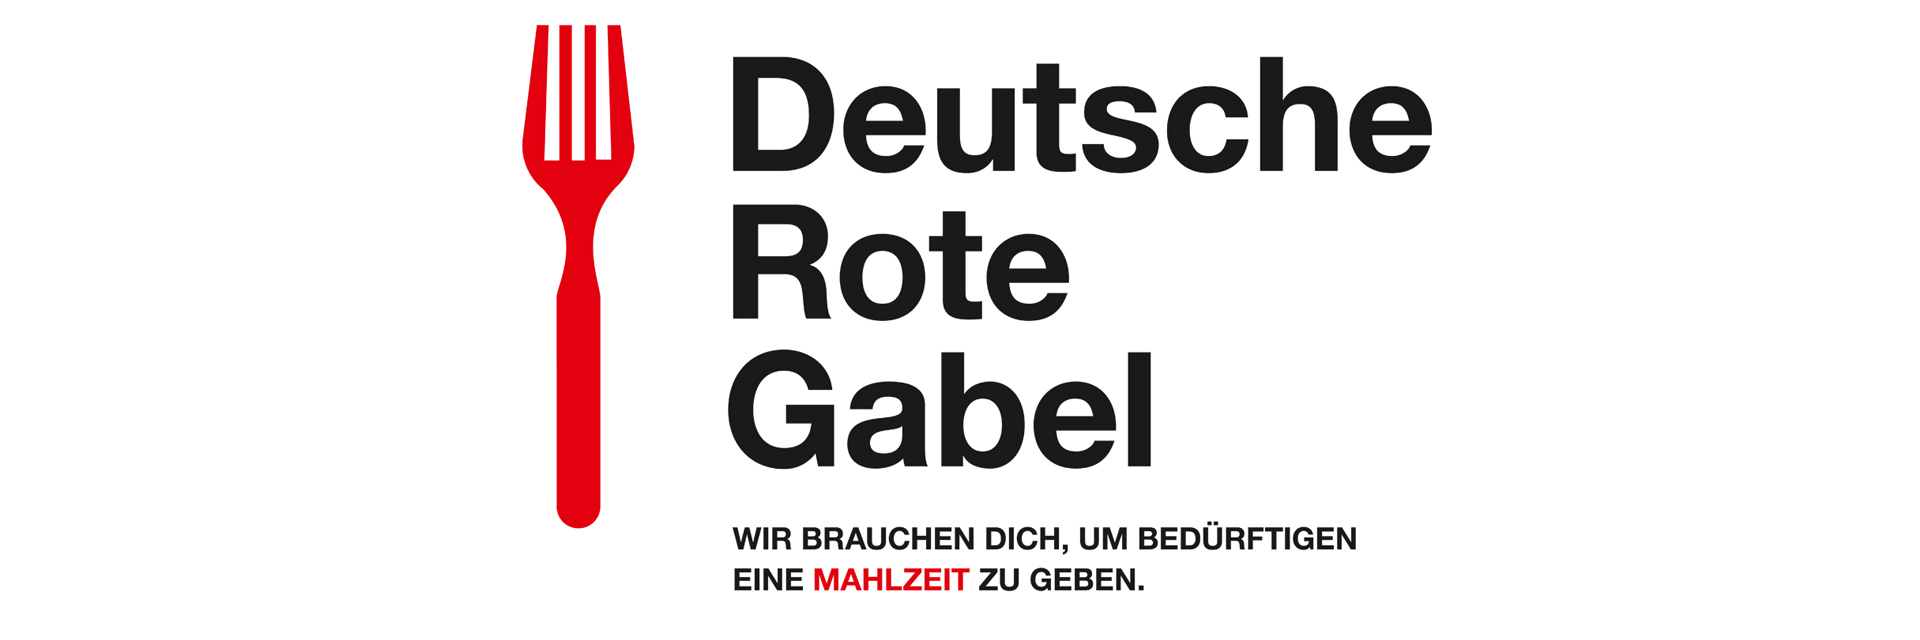 Grafik: DRK-Kampagnenmotiv "Deutsche Rote Gabel" mit Gabel-Piktogramm